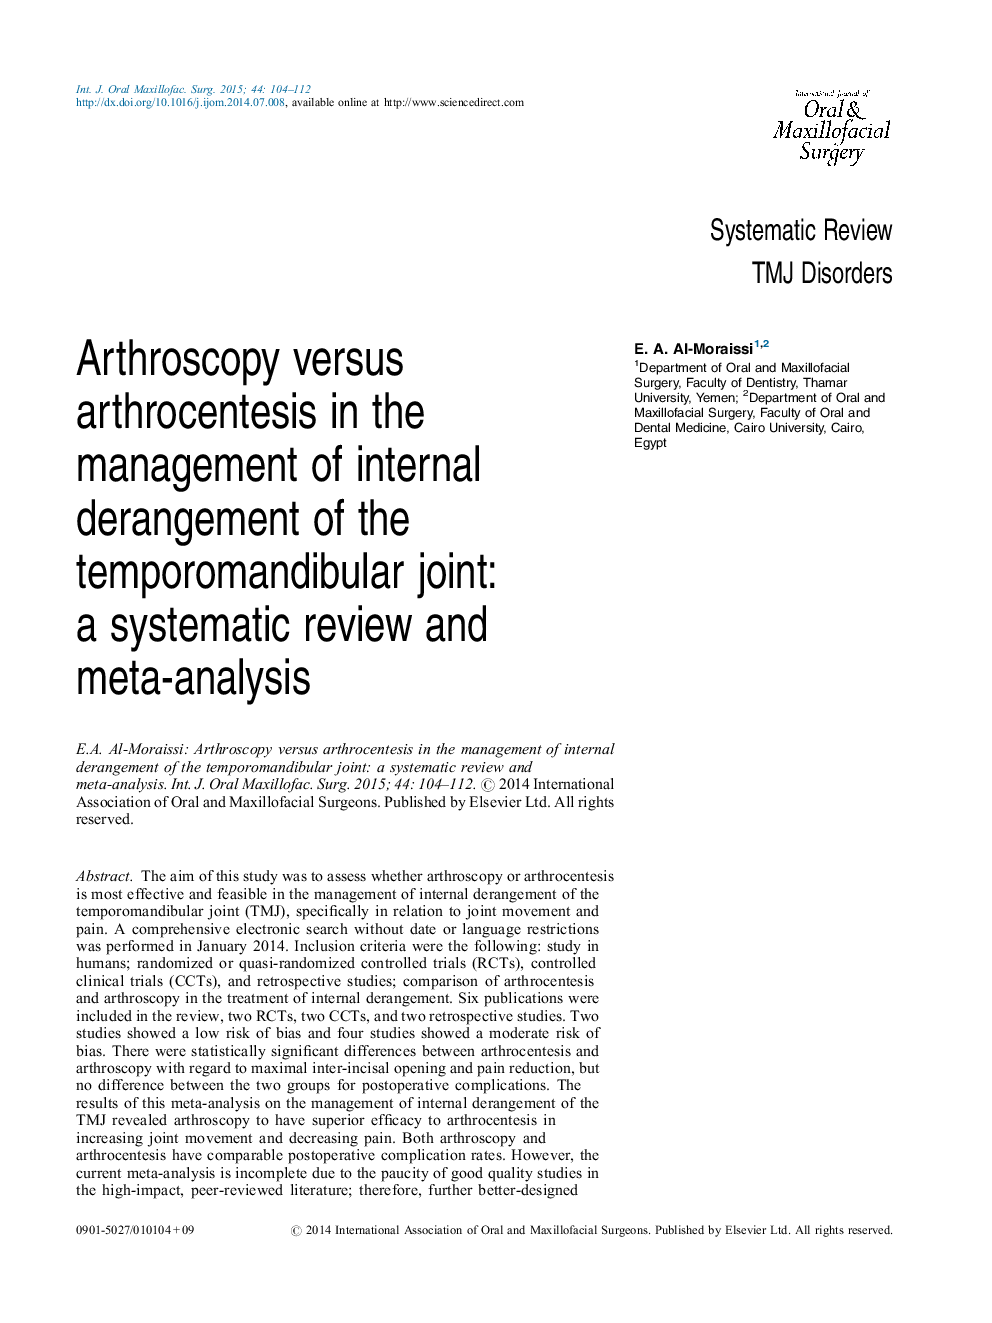 آرتروسکوپی در مقابل آرتروتنتز در مدیریت اختلال داخلی مفصل مفصلی: یک بررسی سیستماتیک و متاآنالیز 